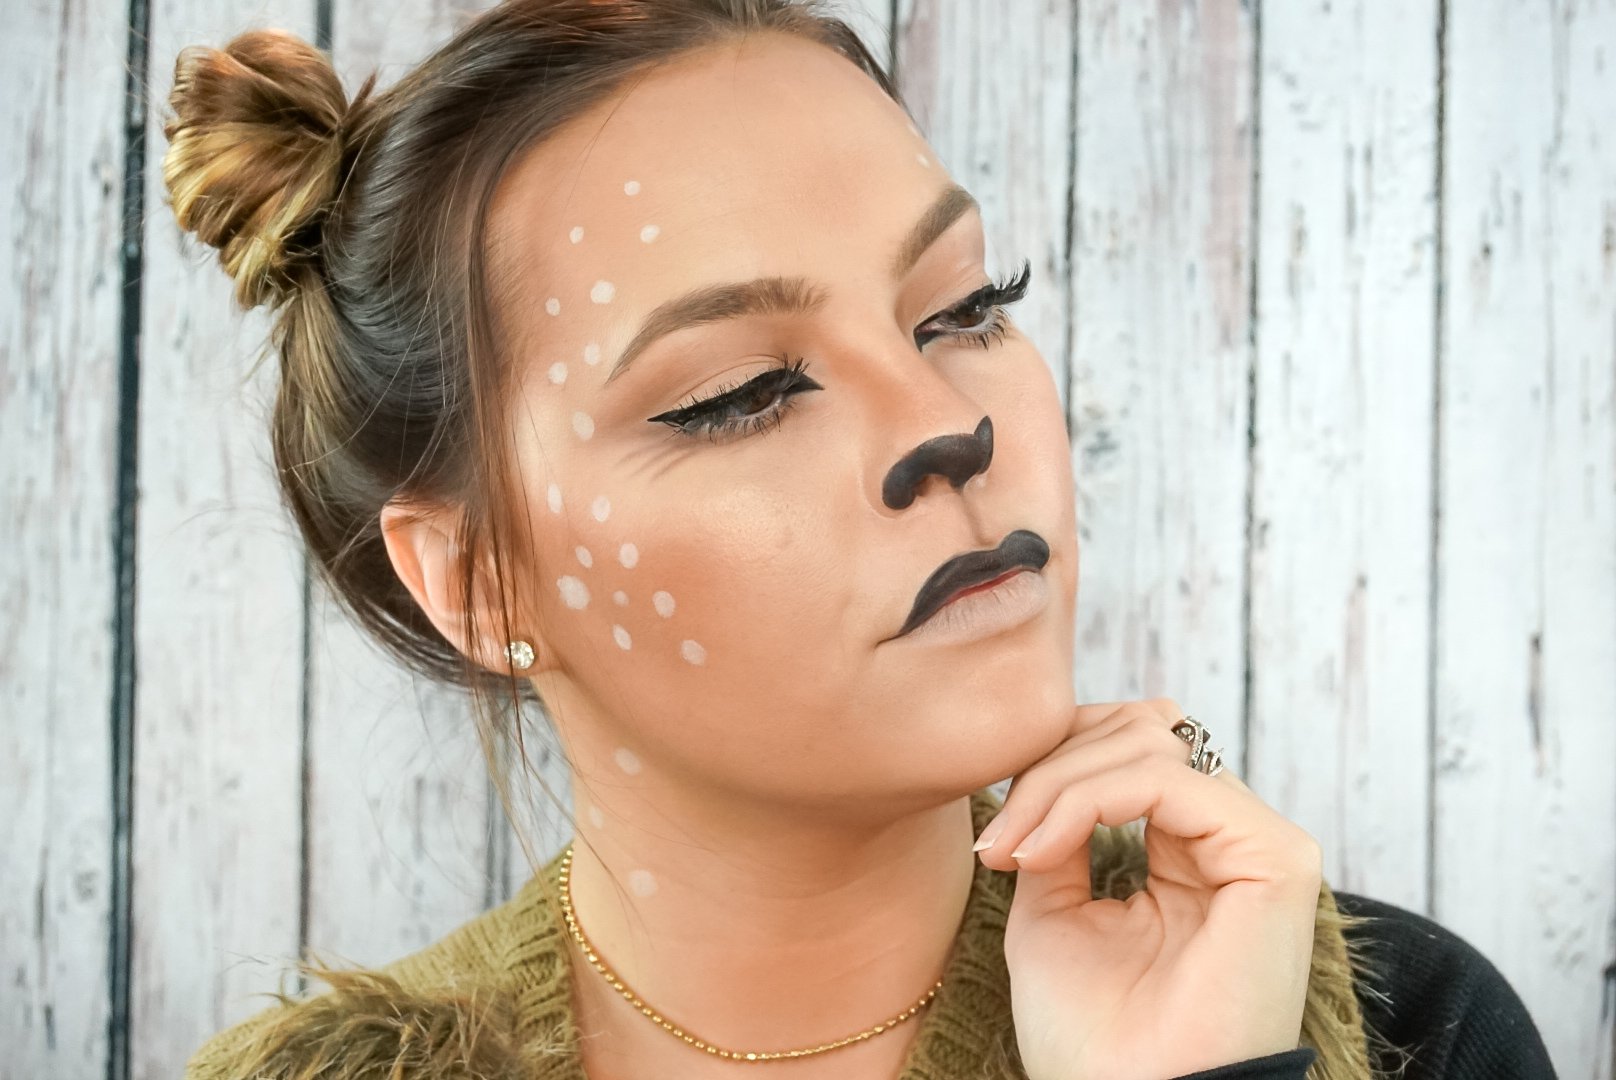 10 DIY Halloween Makeup Looks to Try